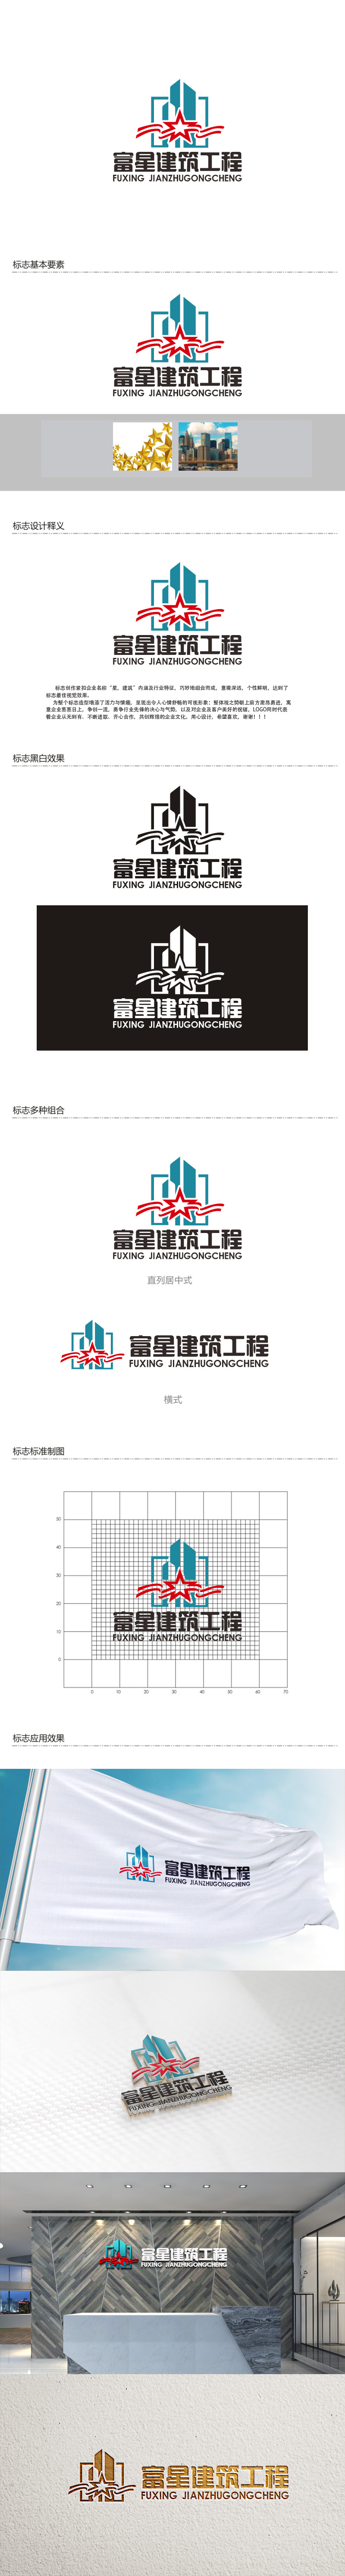 秦晓东的天津富星建筑工程有限公司logo设计